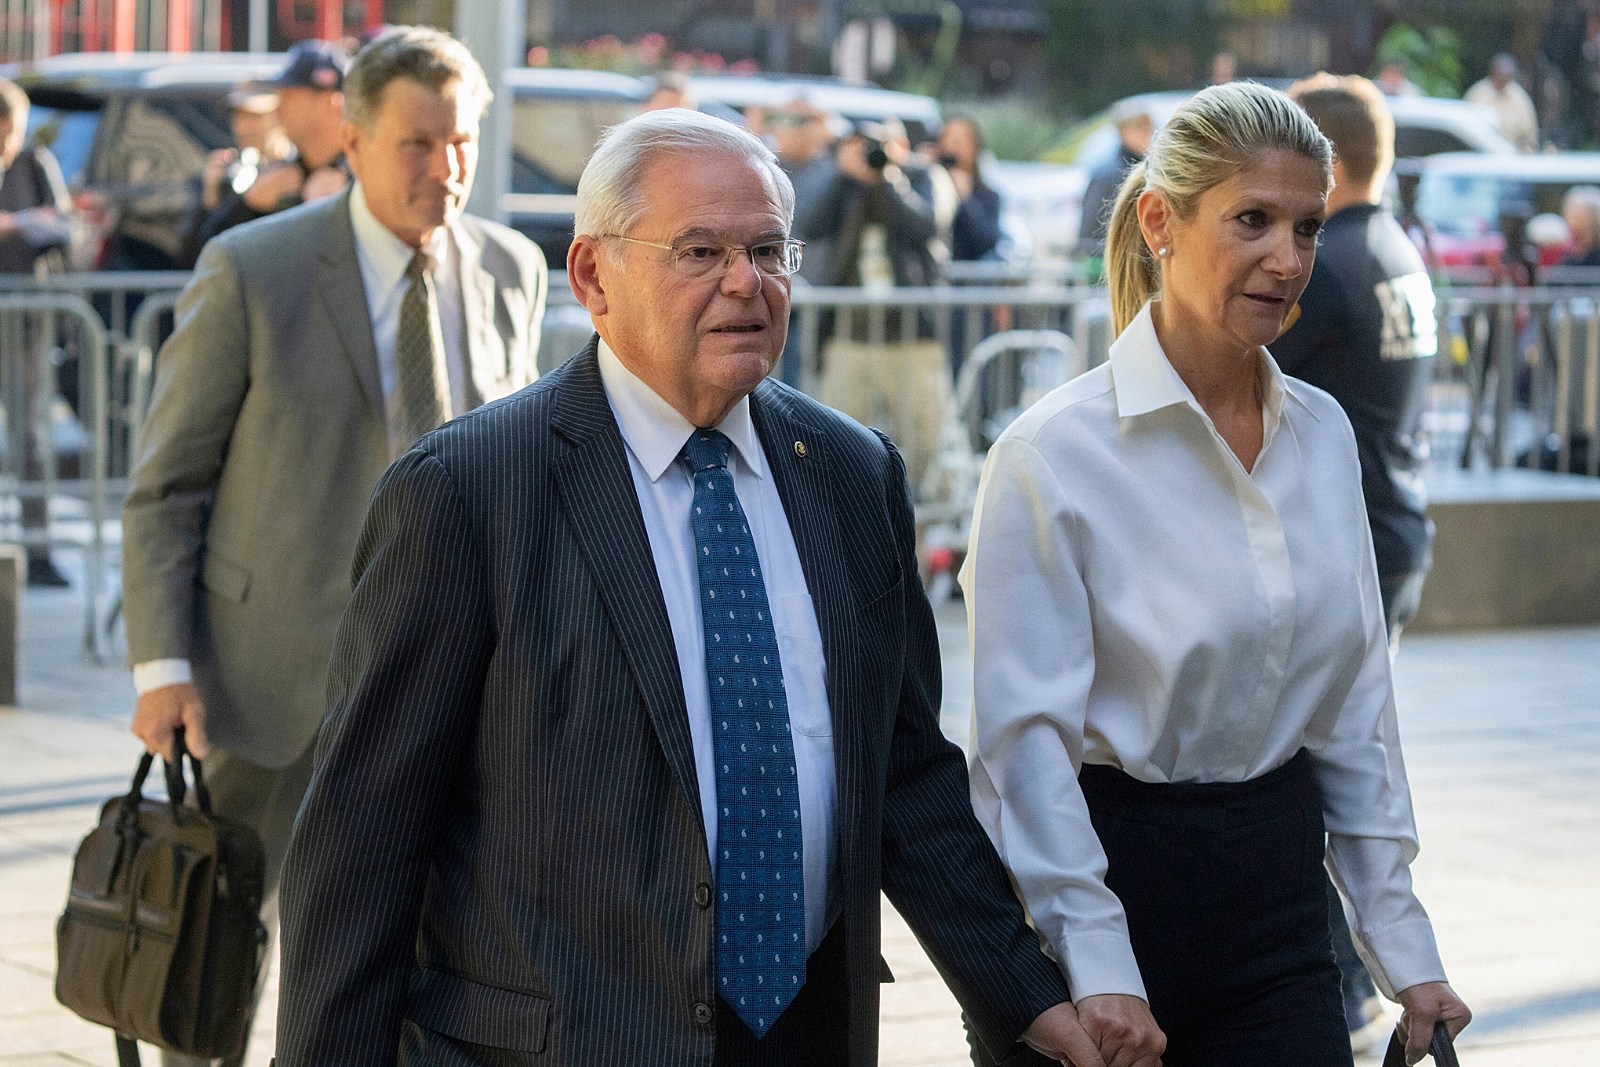 NJ Sen. Bob Menendez reveals his wife has breast cancer amid
corruption trial